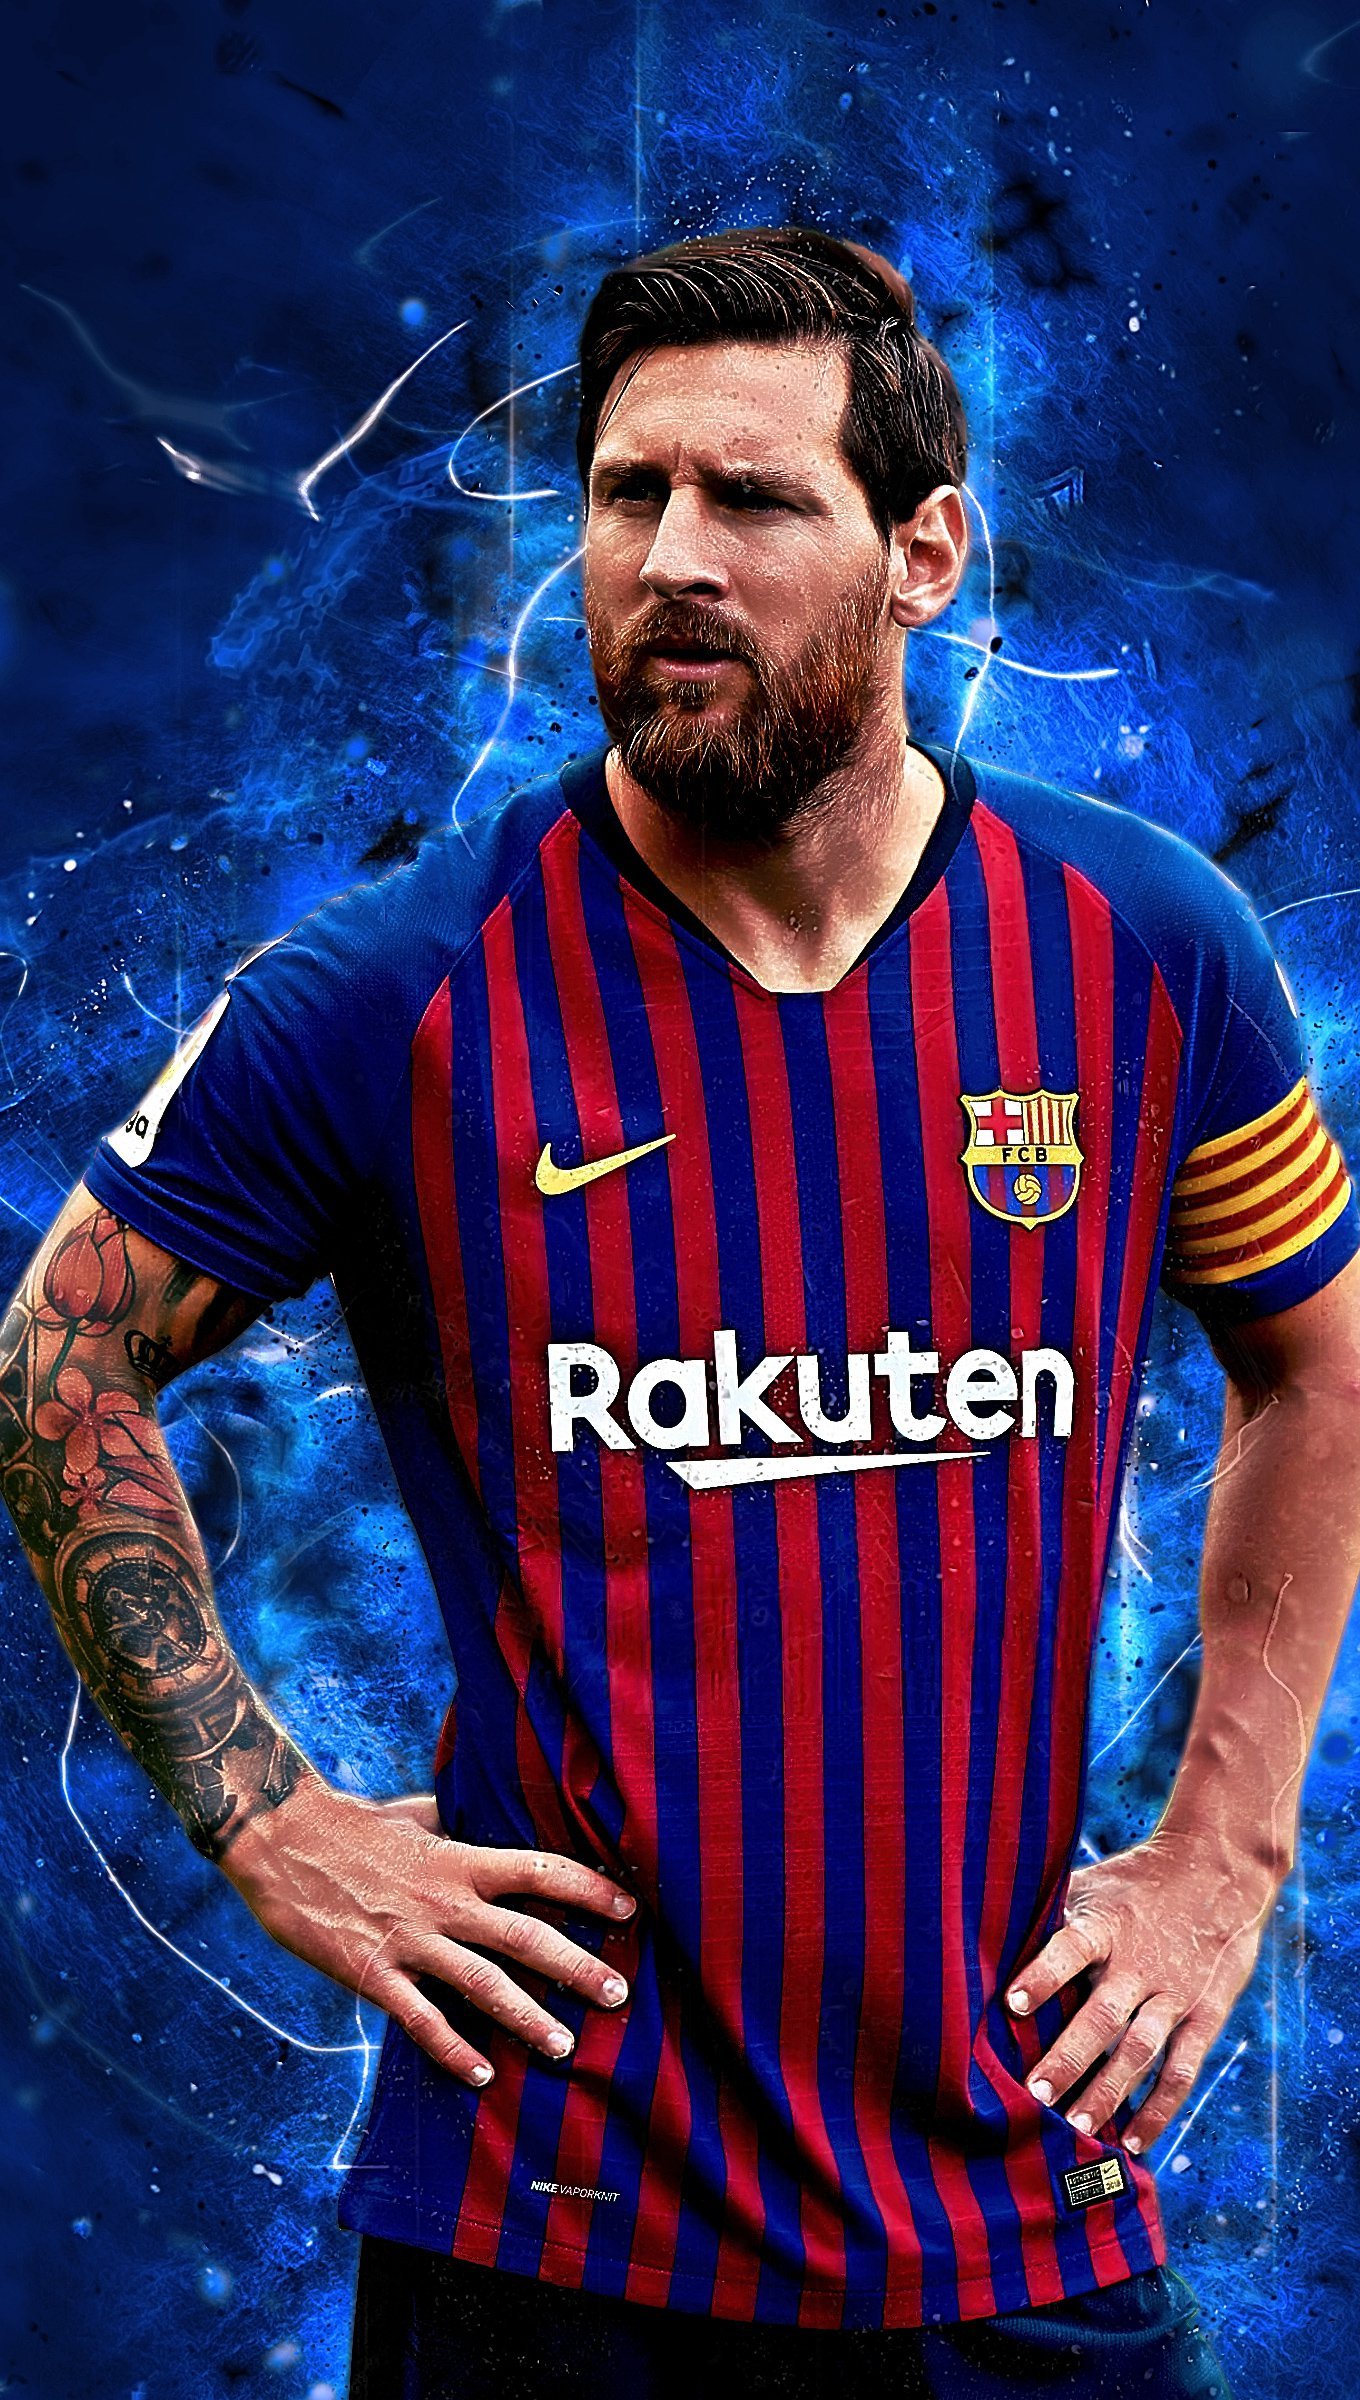 Lionel Messi và Barcelona trong chất lượng 4k Ultra HD sẽ khiến bạn bị lôi cuốn vào khung hình. Với màu sắc sống động và sắc nét như thật, bạn sẽ cảm thấy như được đứng ngay tại sân Nou Camp và chứng kiến cuộc đua giành chức vô địch của đội bóng này.